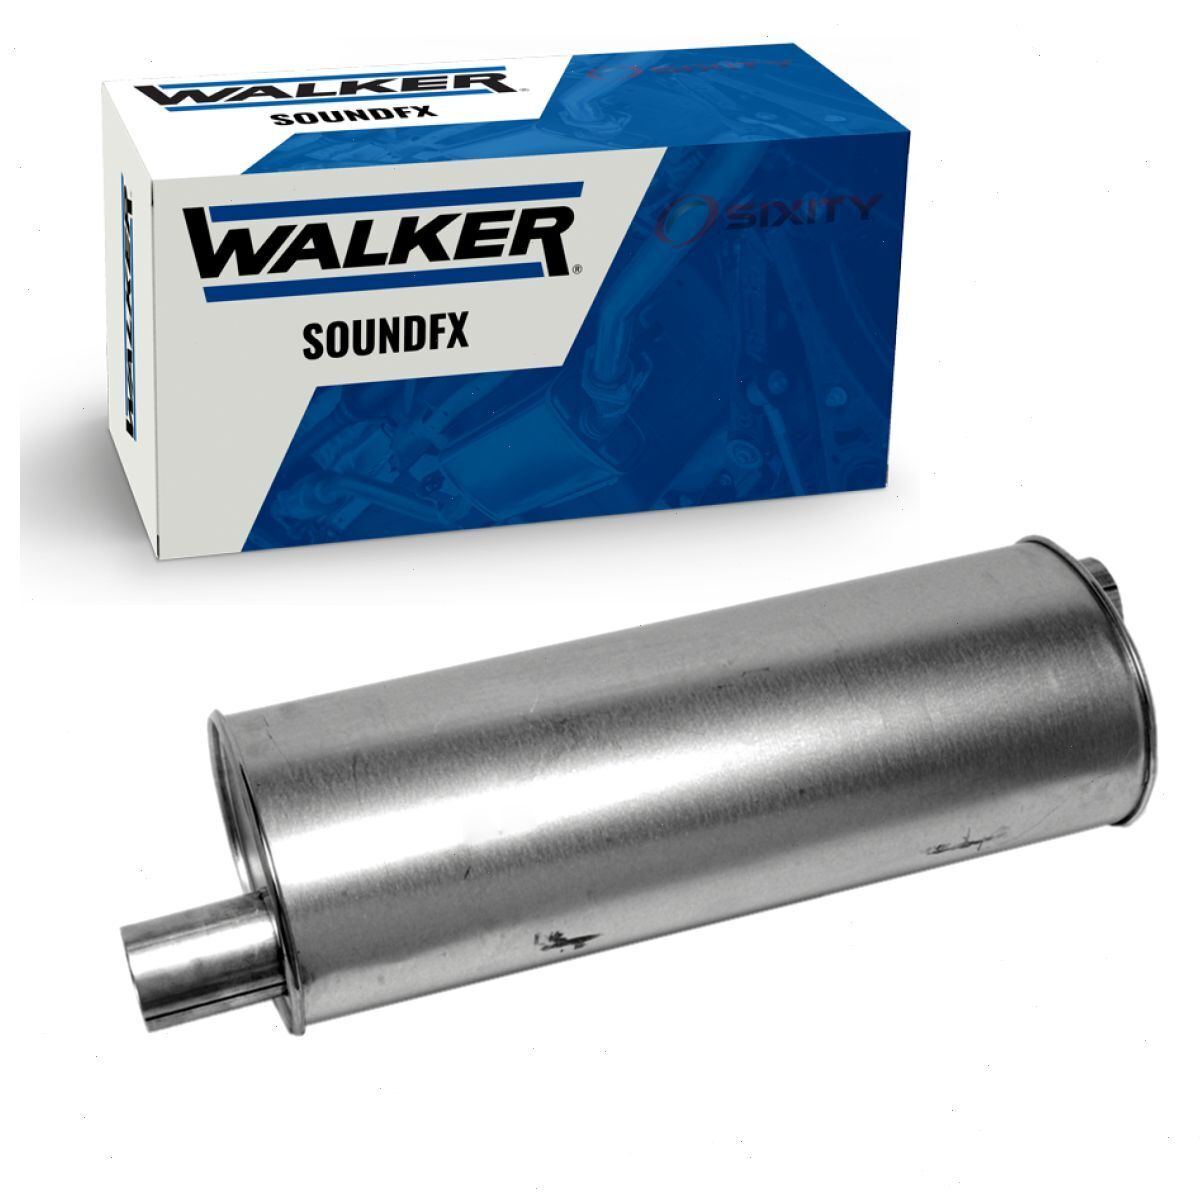 Walker SoundFX 18219 Exhaust Muffler for Mufflers  sp